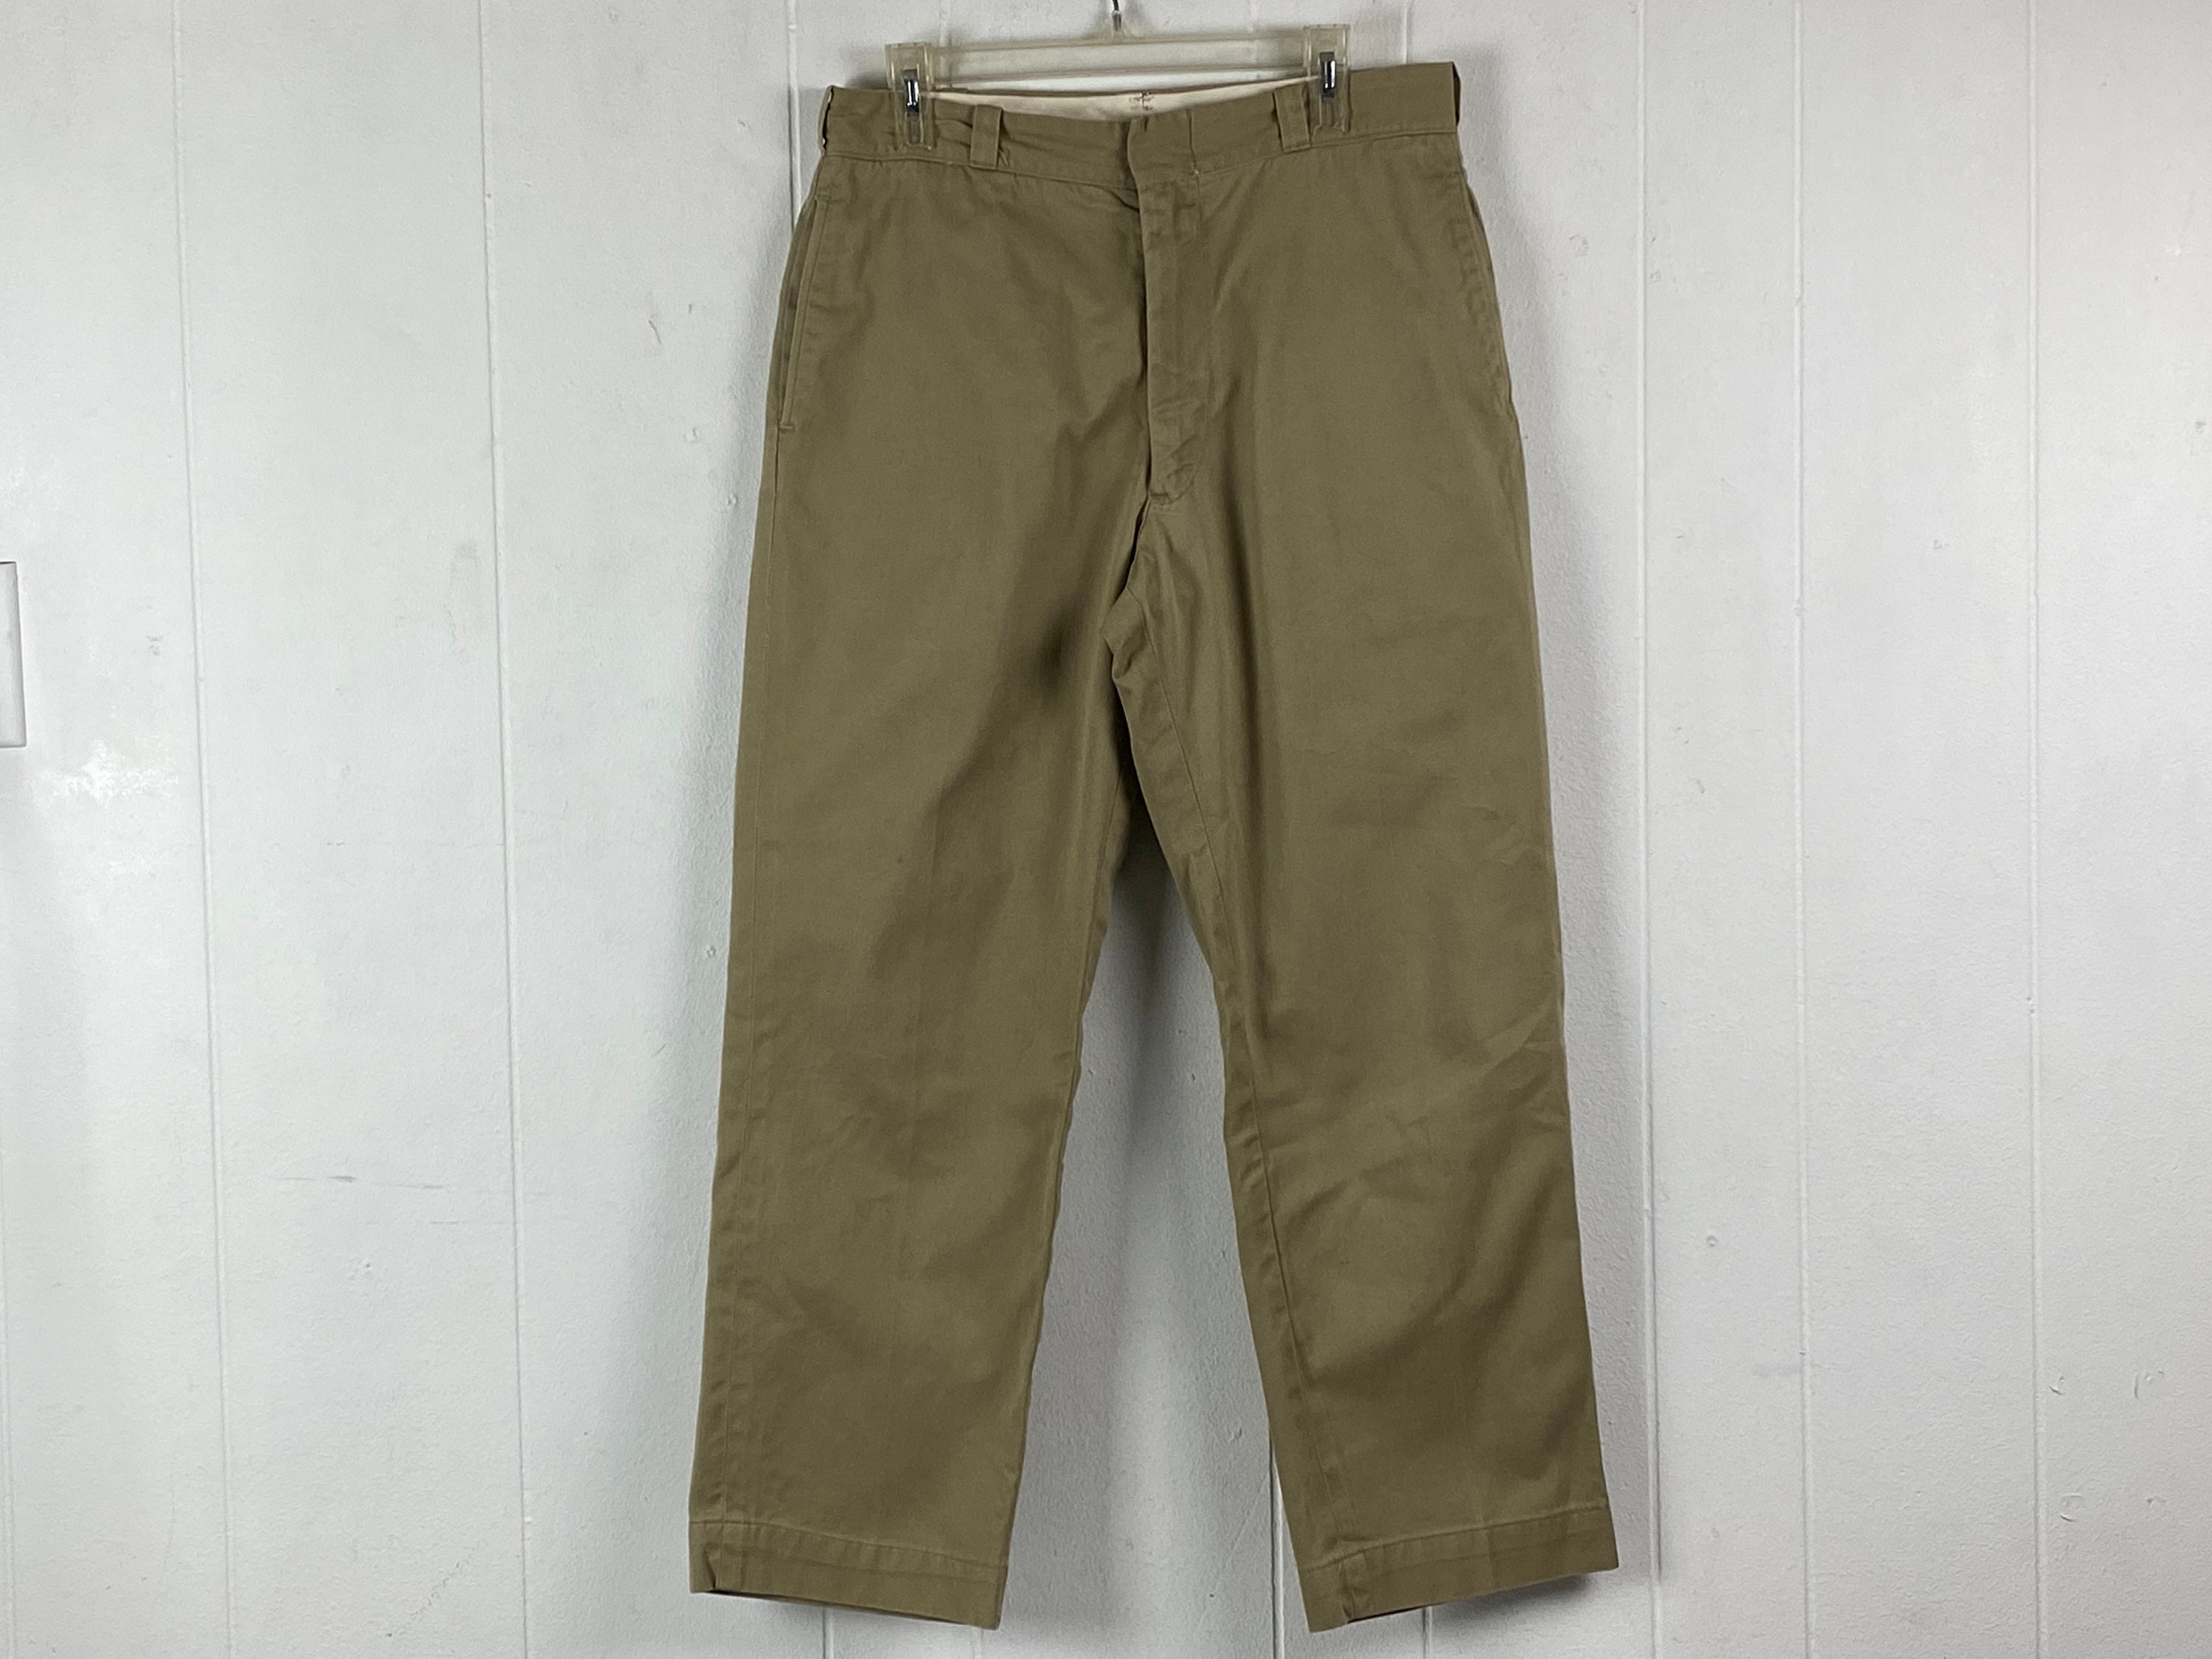 Vintage Pants, Size 33 X 28.5, Cotton Pants, Army Pants, High